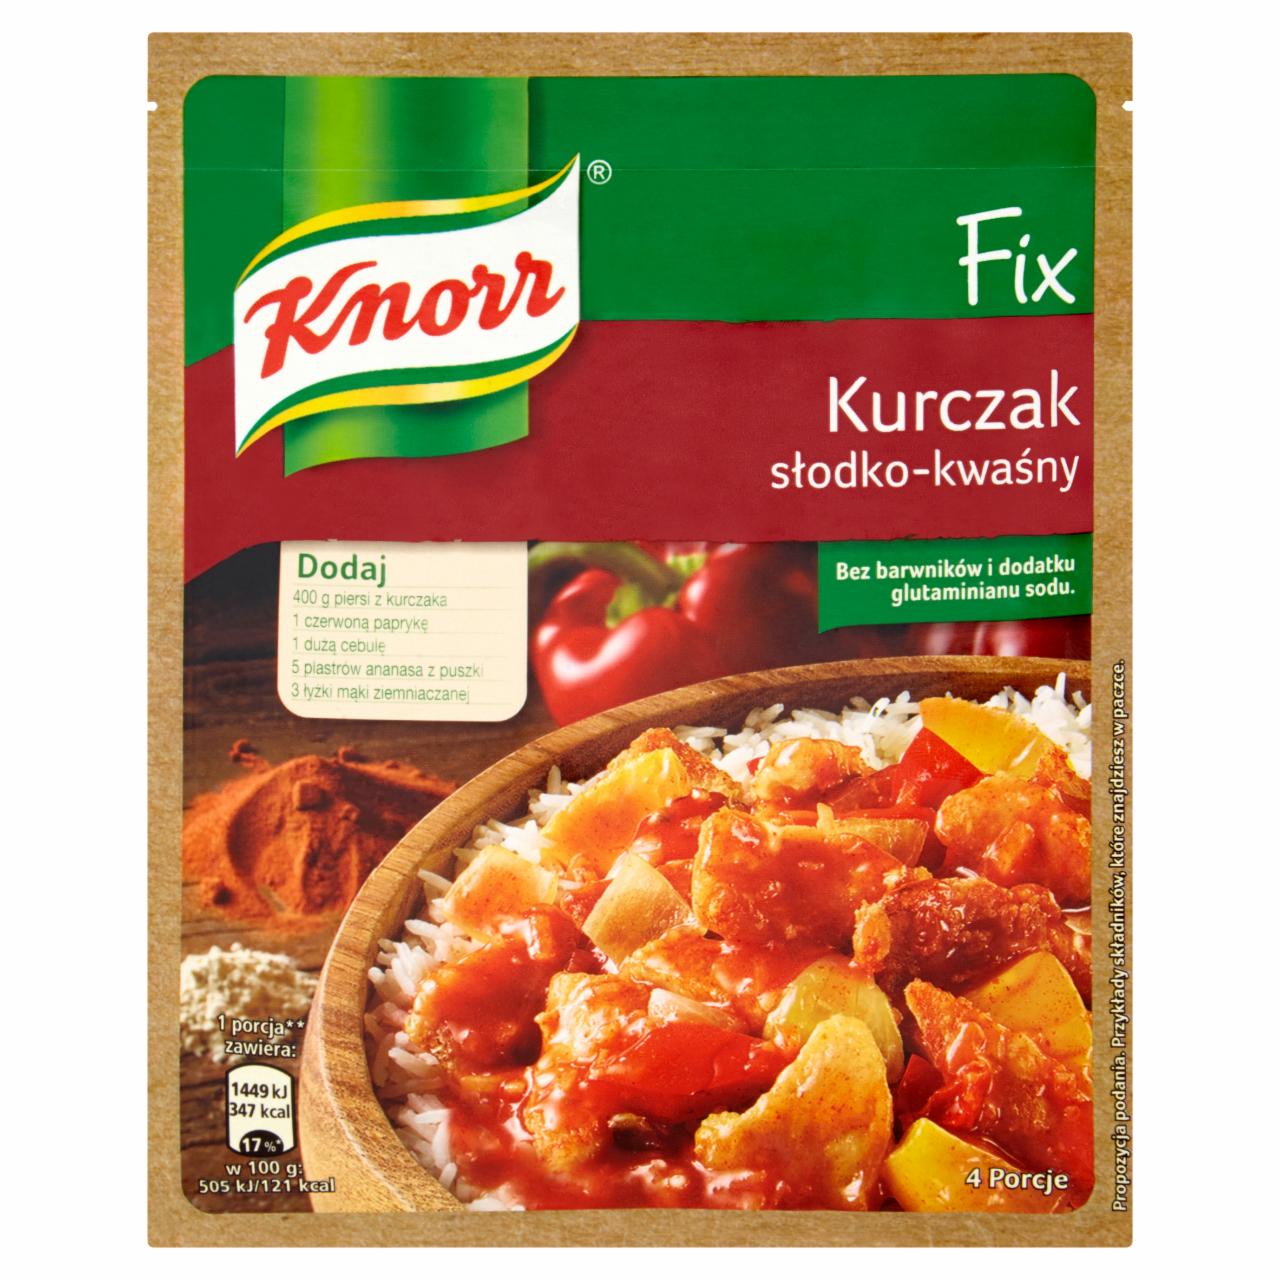 Zdjęcia - Knorr Fix kurczak słodko-kwaśny 64 g